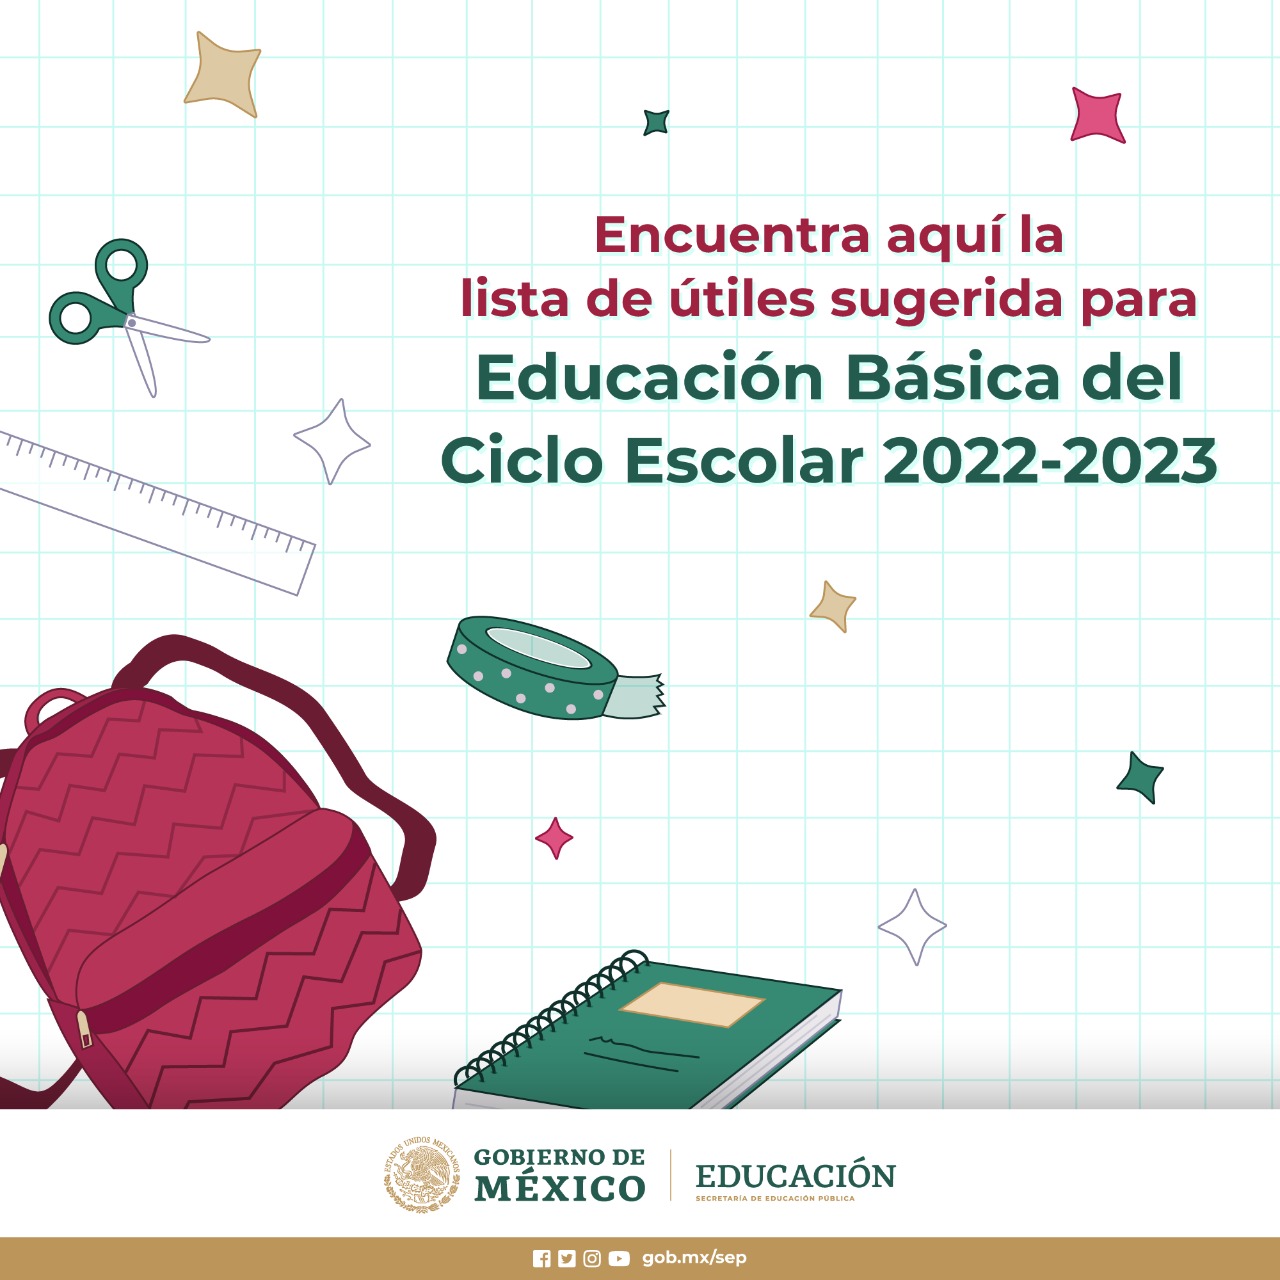 Encuentra aquí la lista de útiles sugerida para Educación Básica del Ciclo Escolar 2022-2023